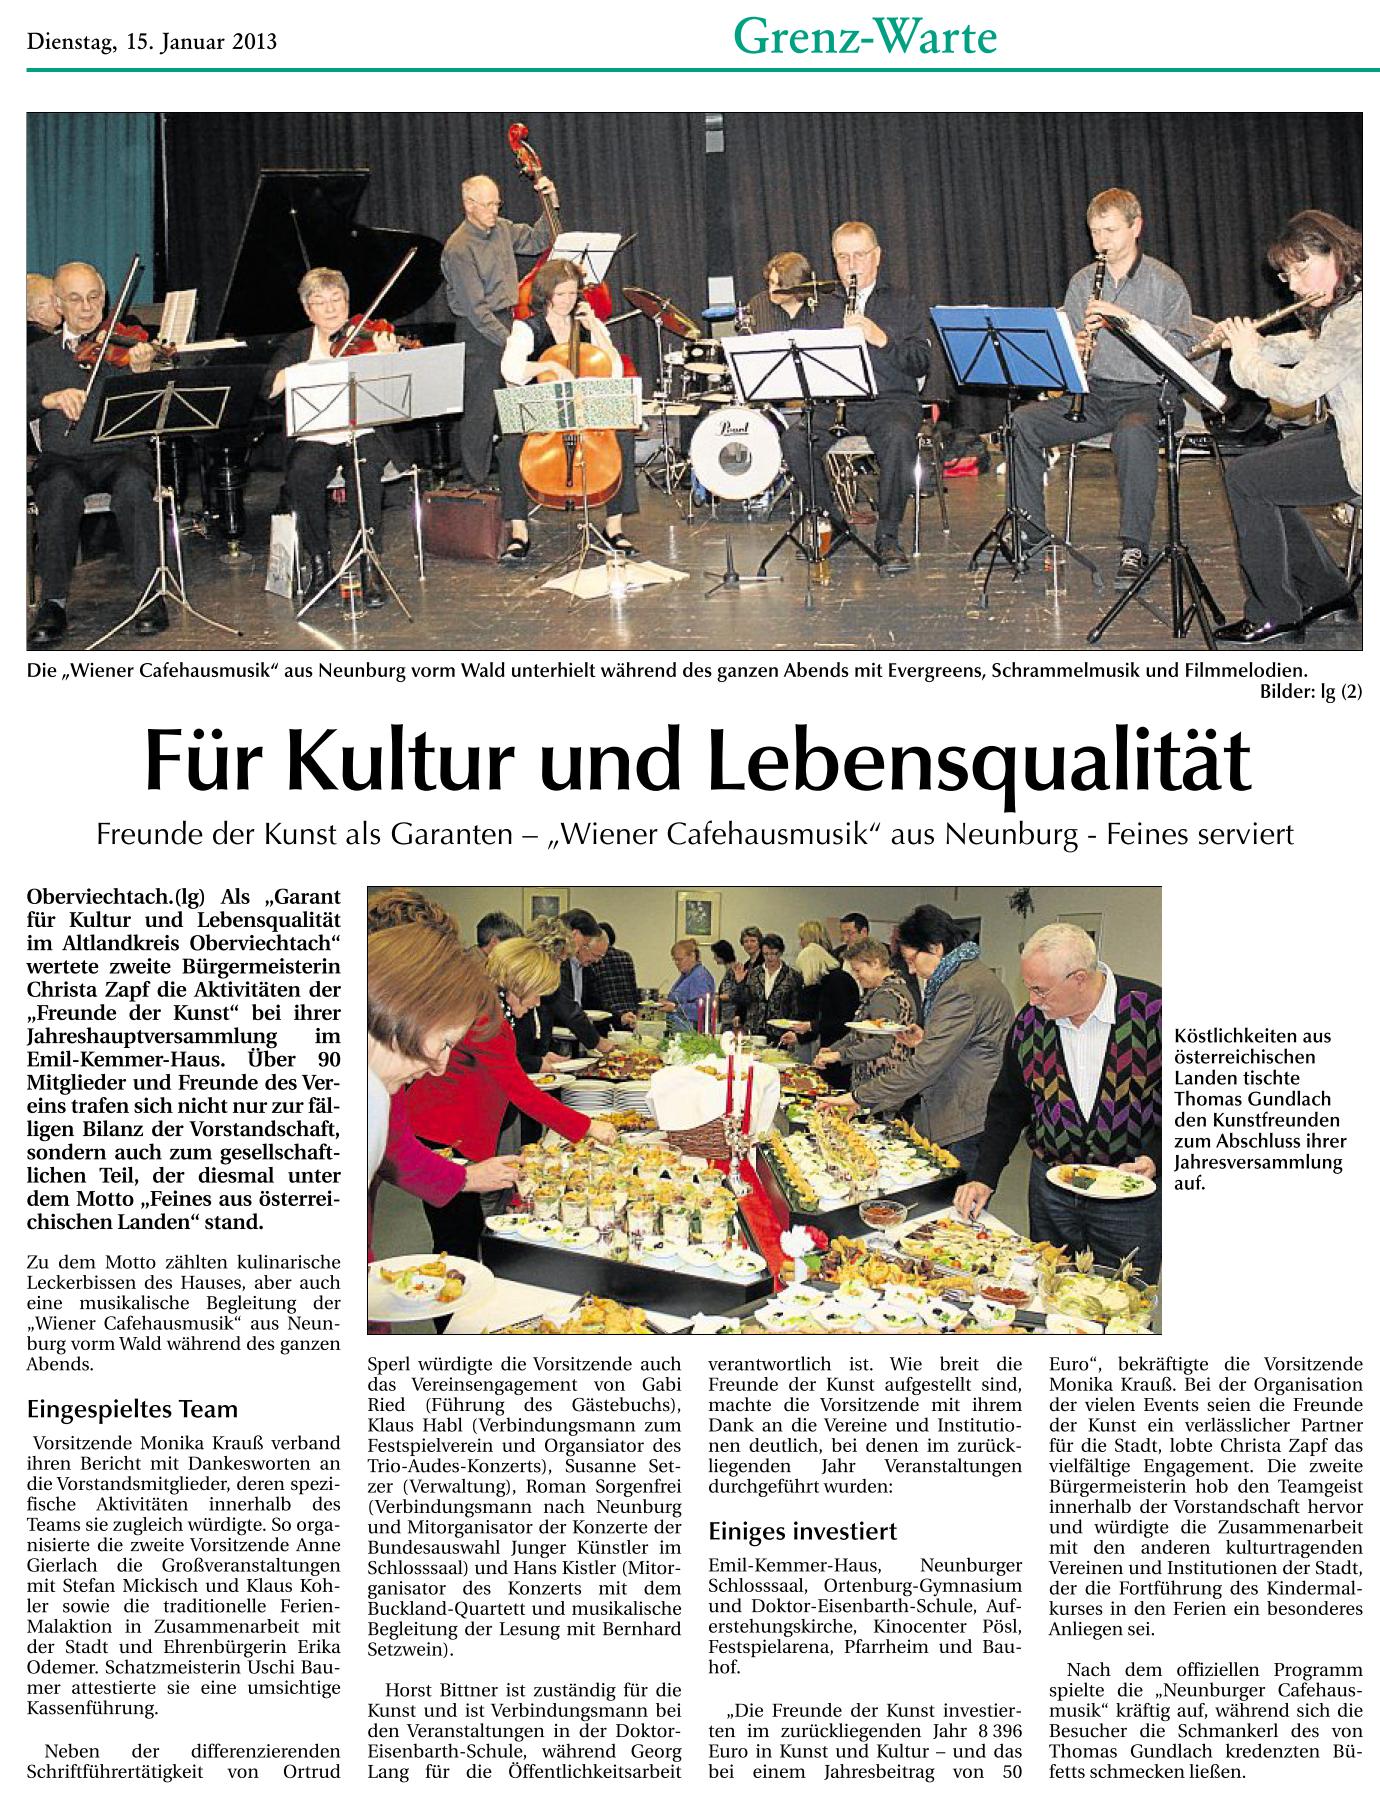 DerNeueTag 15.01.2013